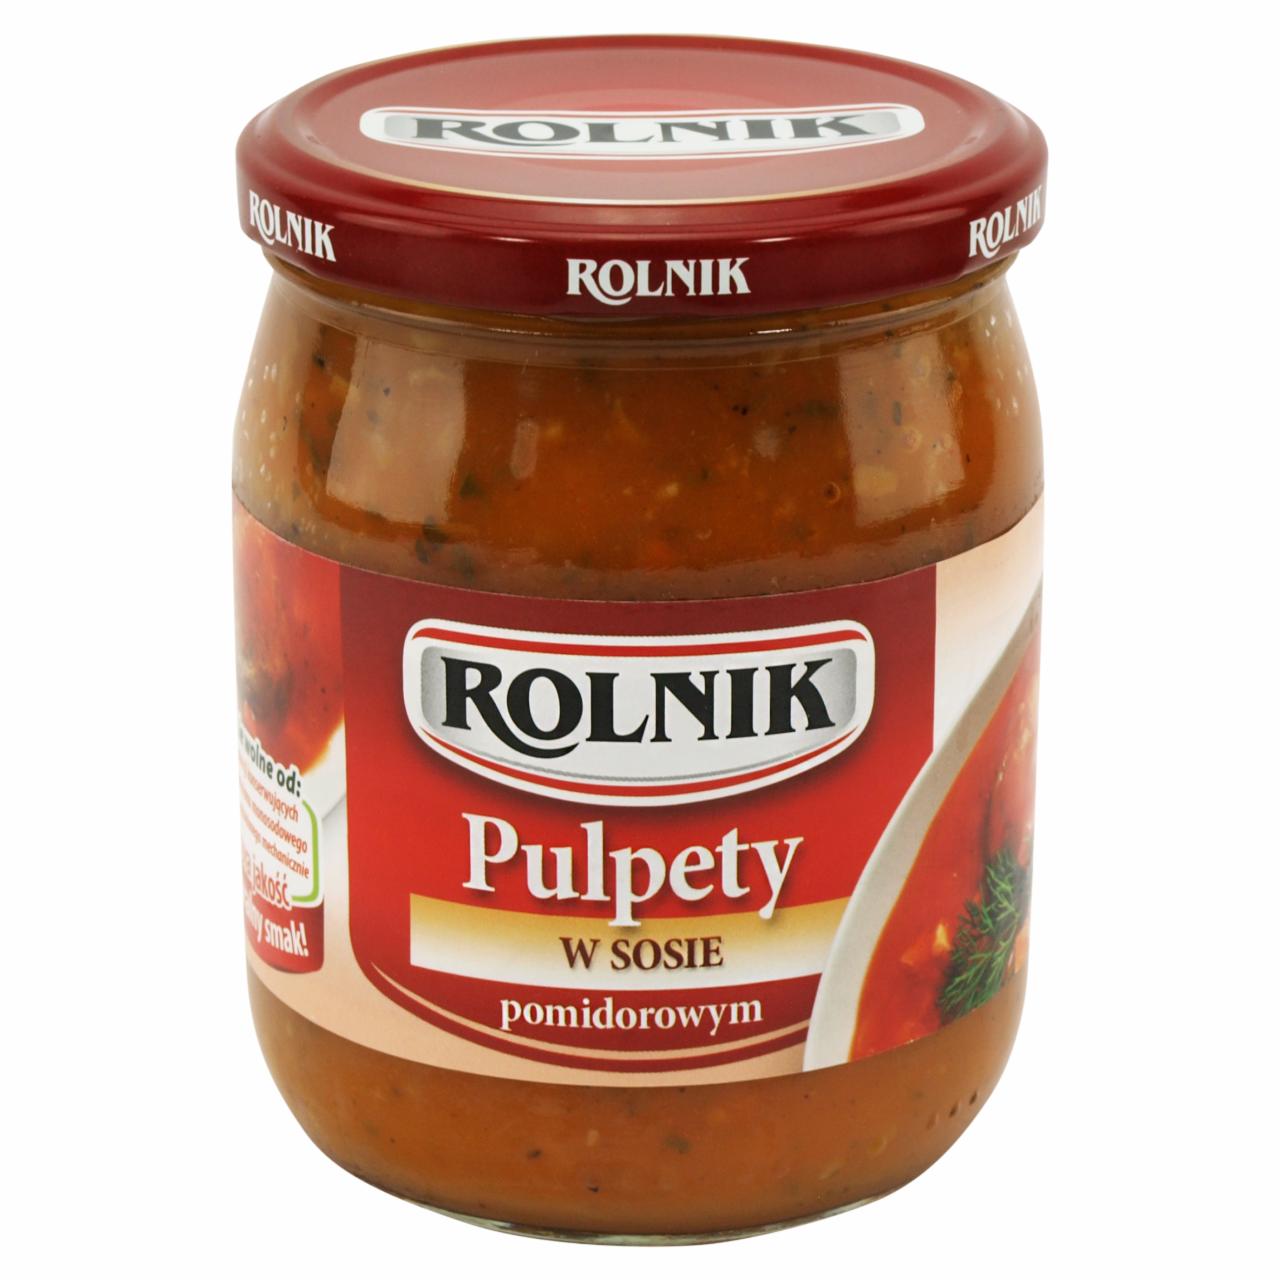 Zdjęcia - Rolnik Pulpety w sosie pomidorowym 500 g